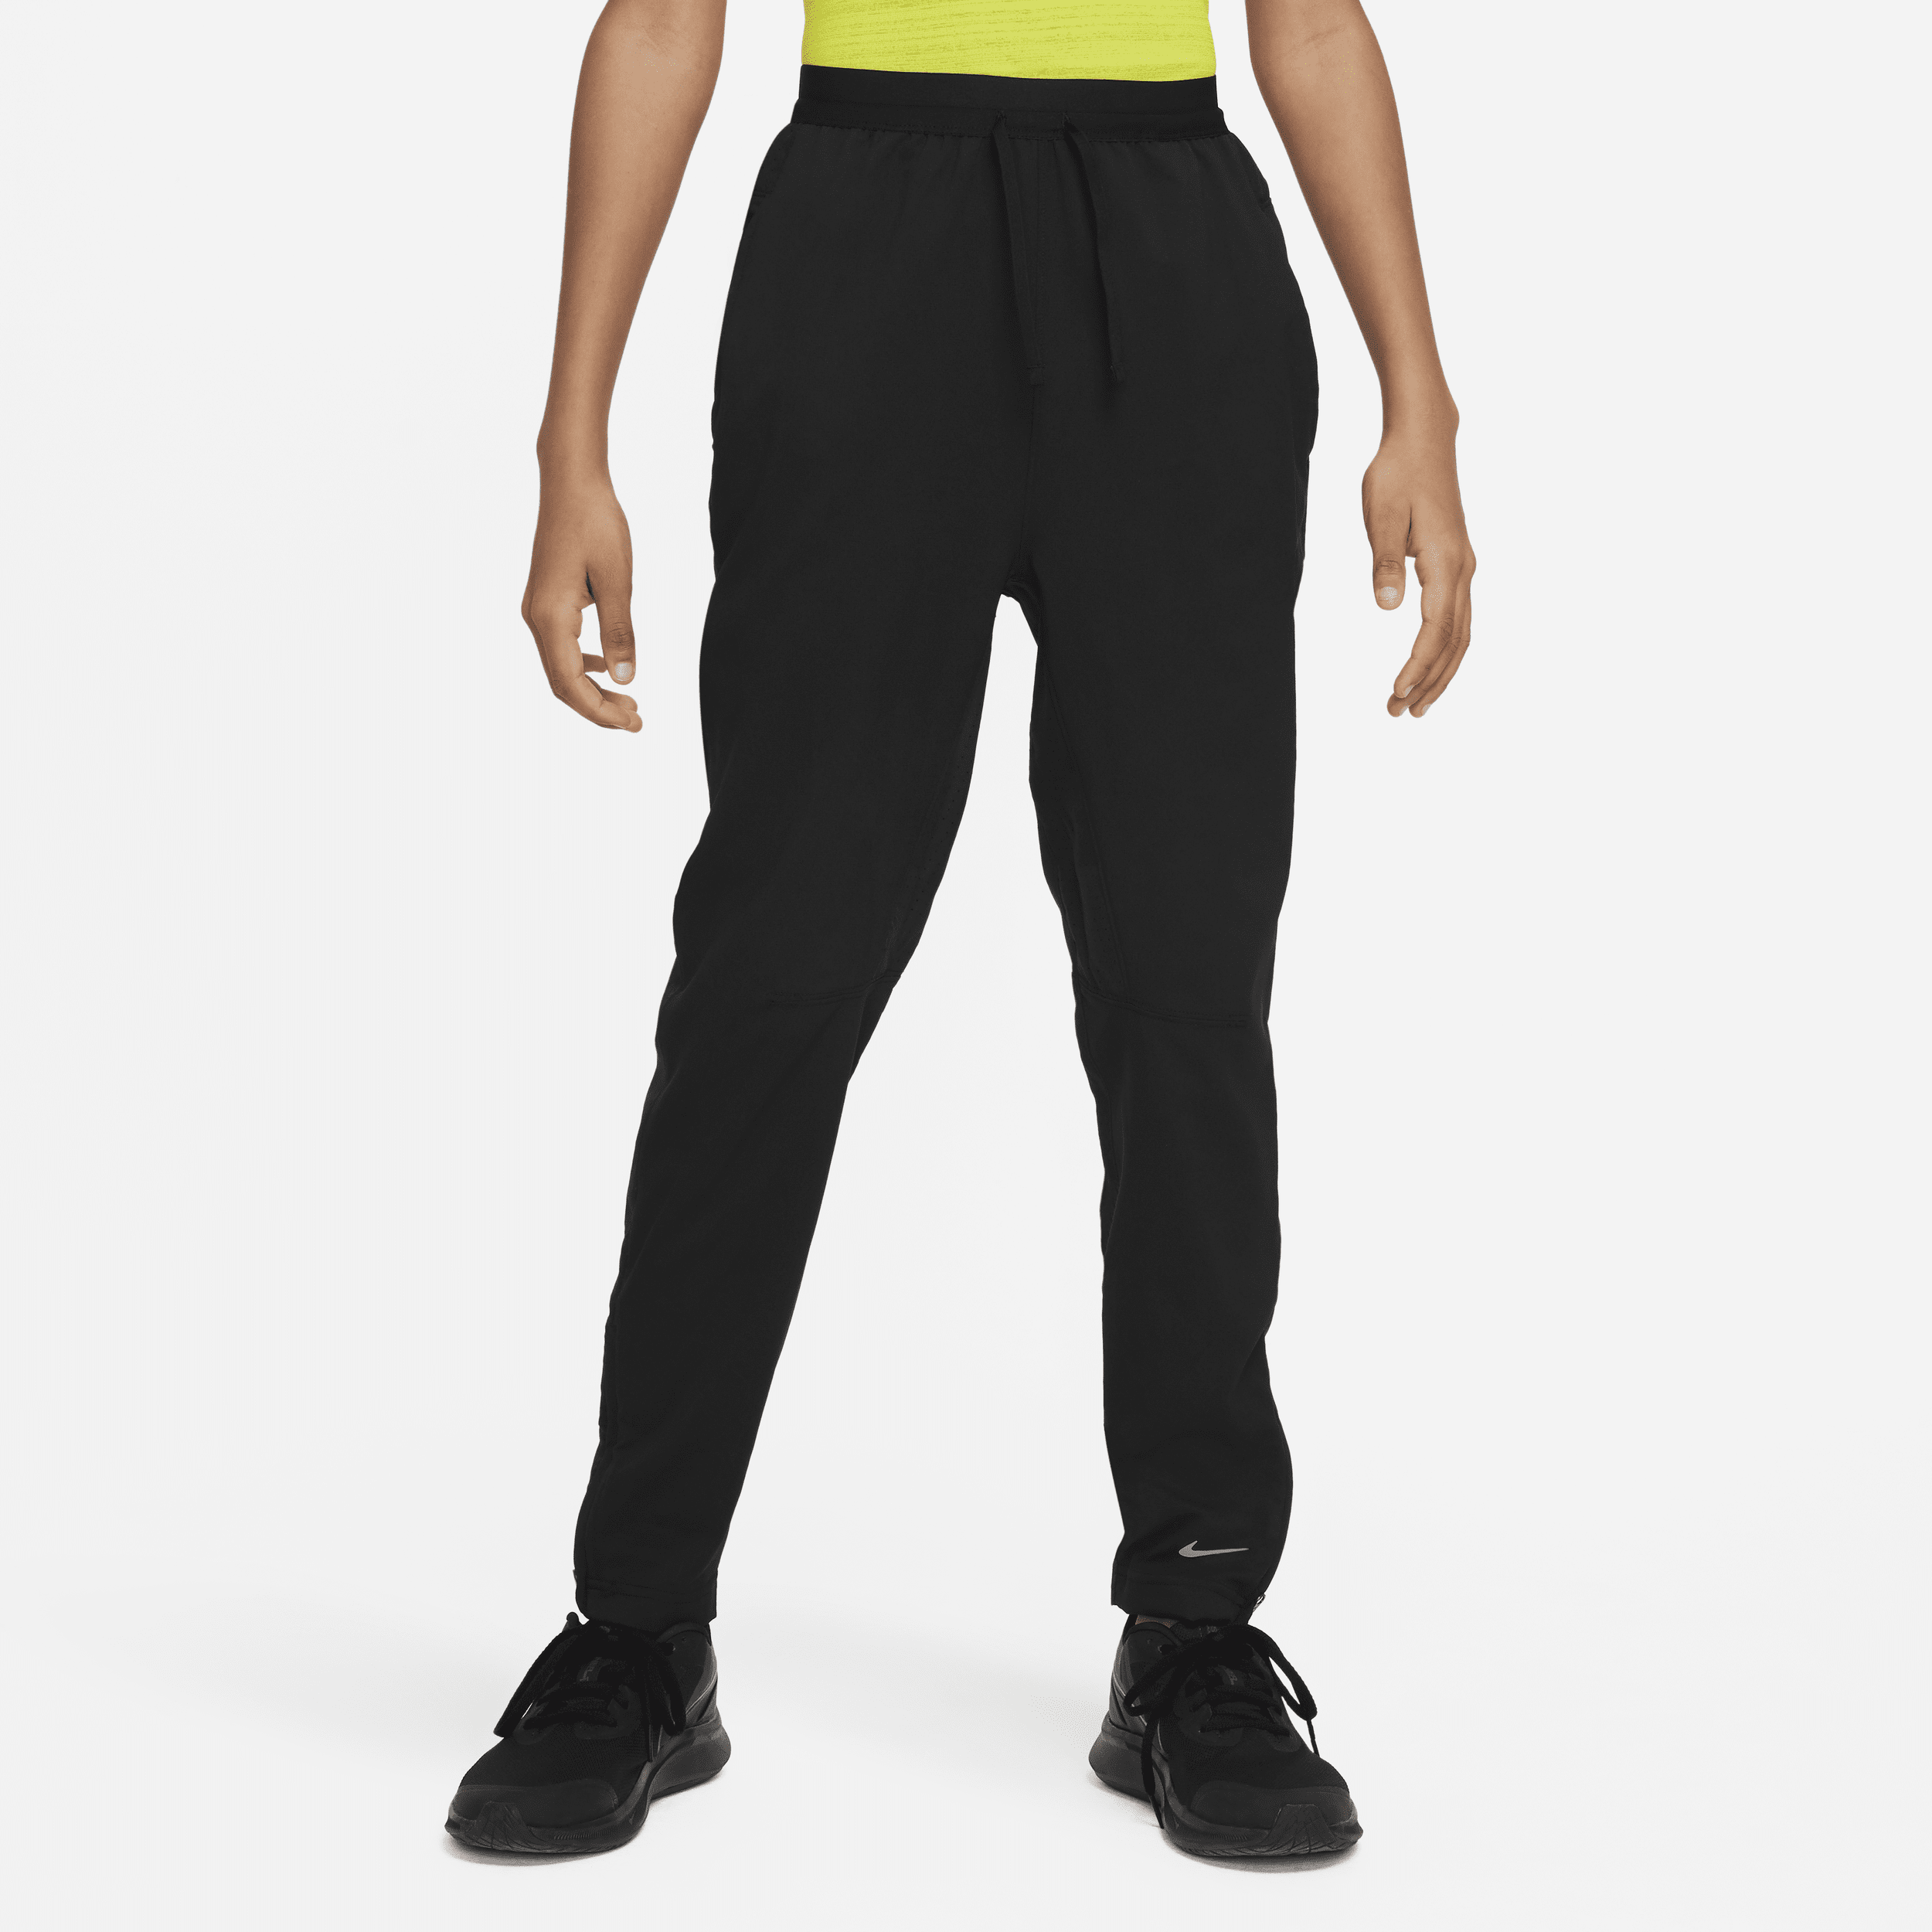 Pantaloni da training Dri-FIT Nike Multi Tech EasyOn – Ragazzo - Nero